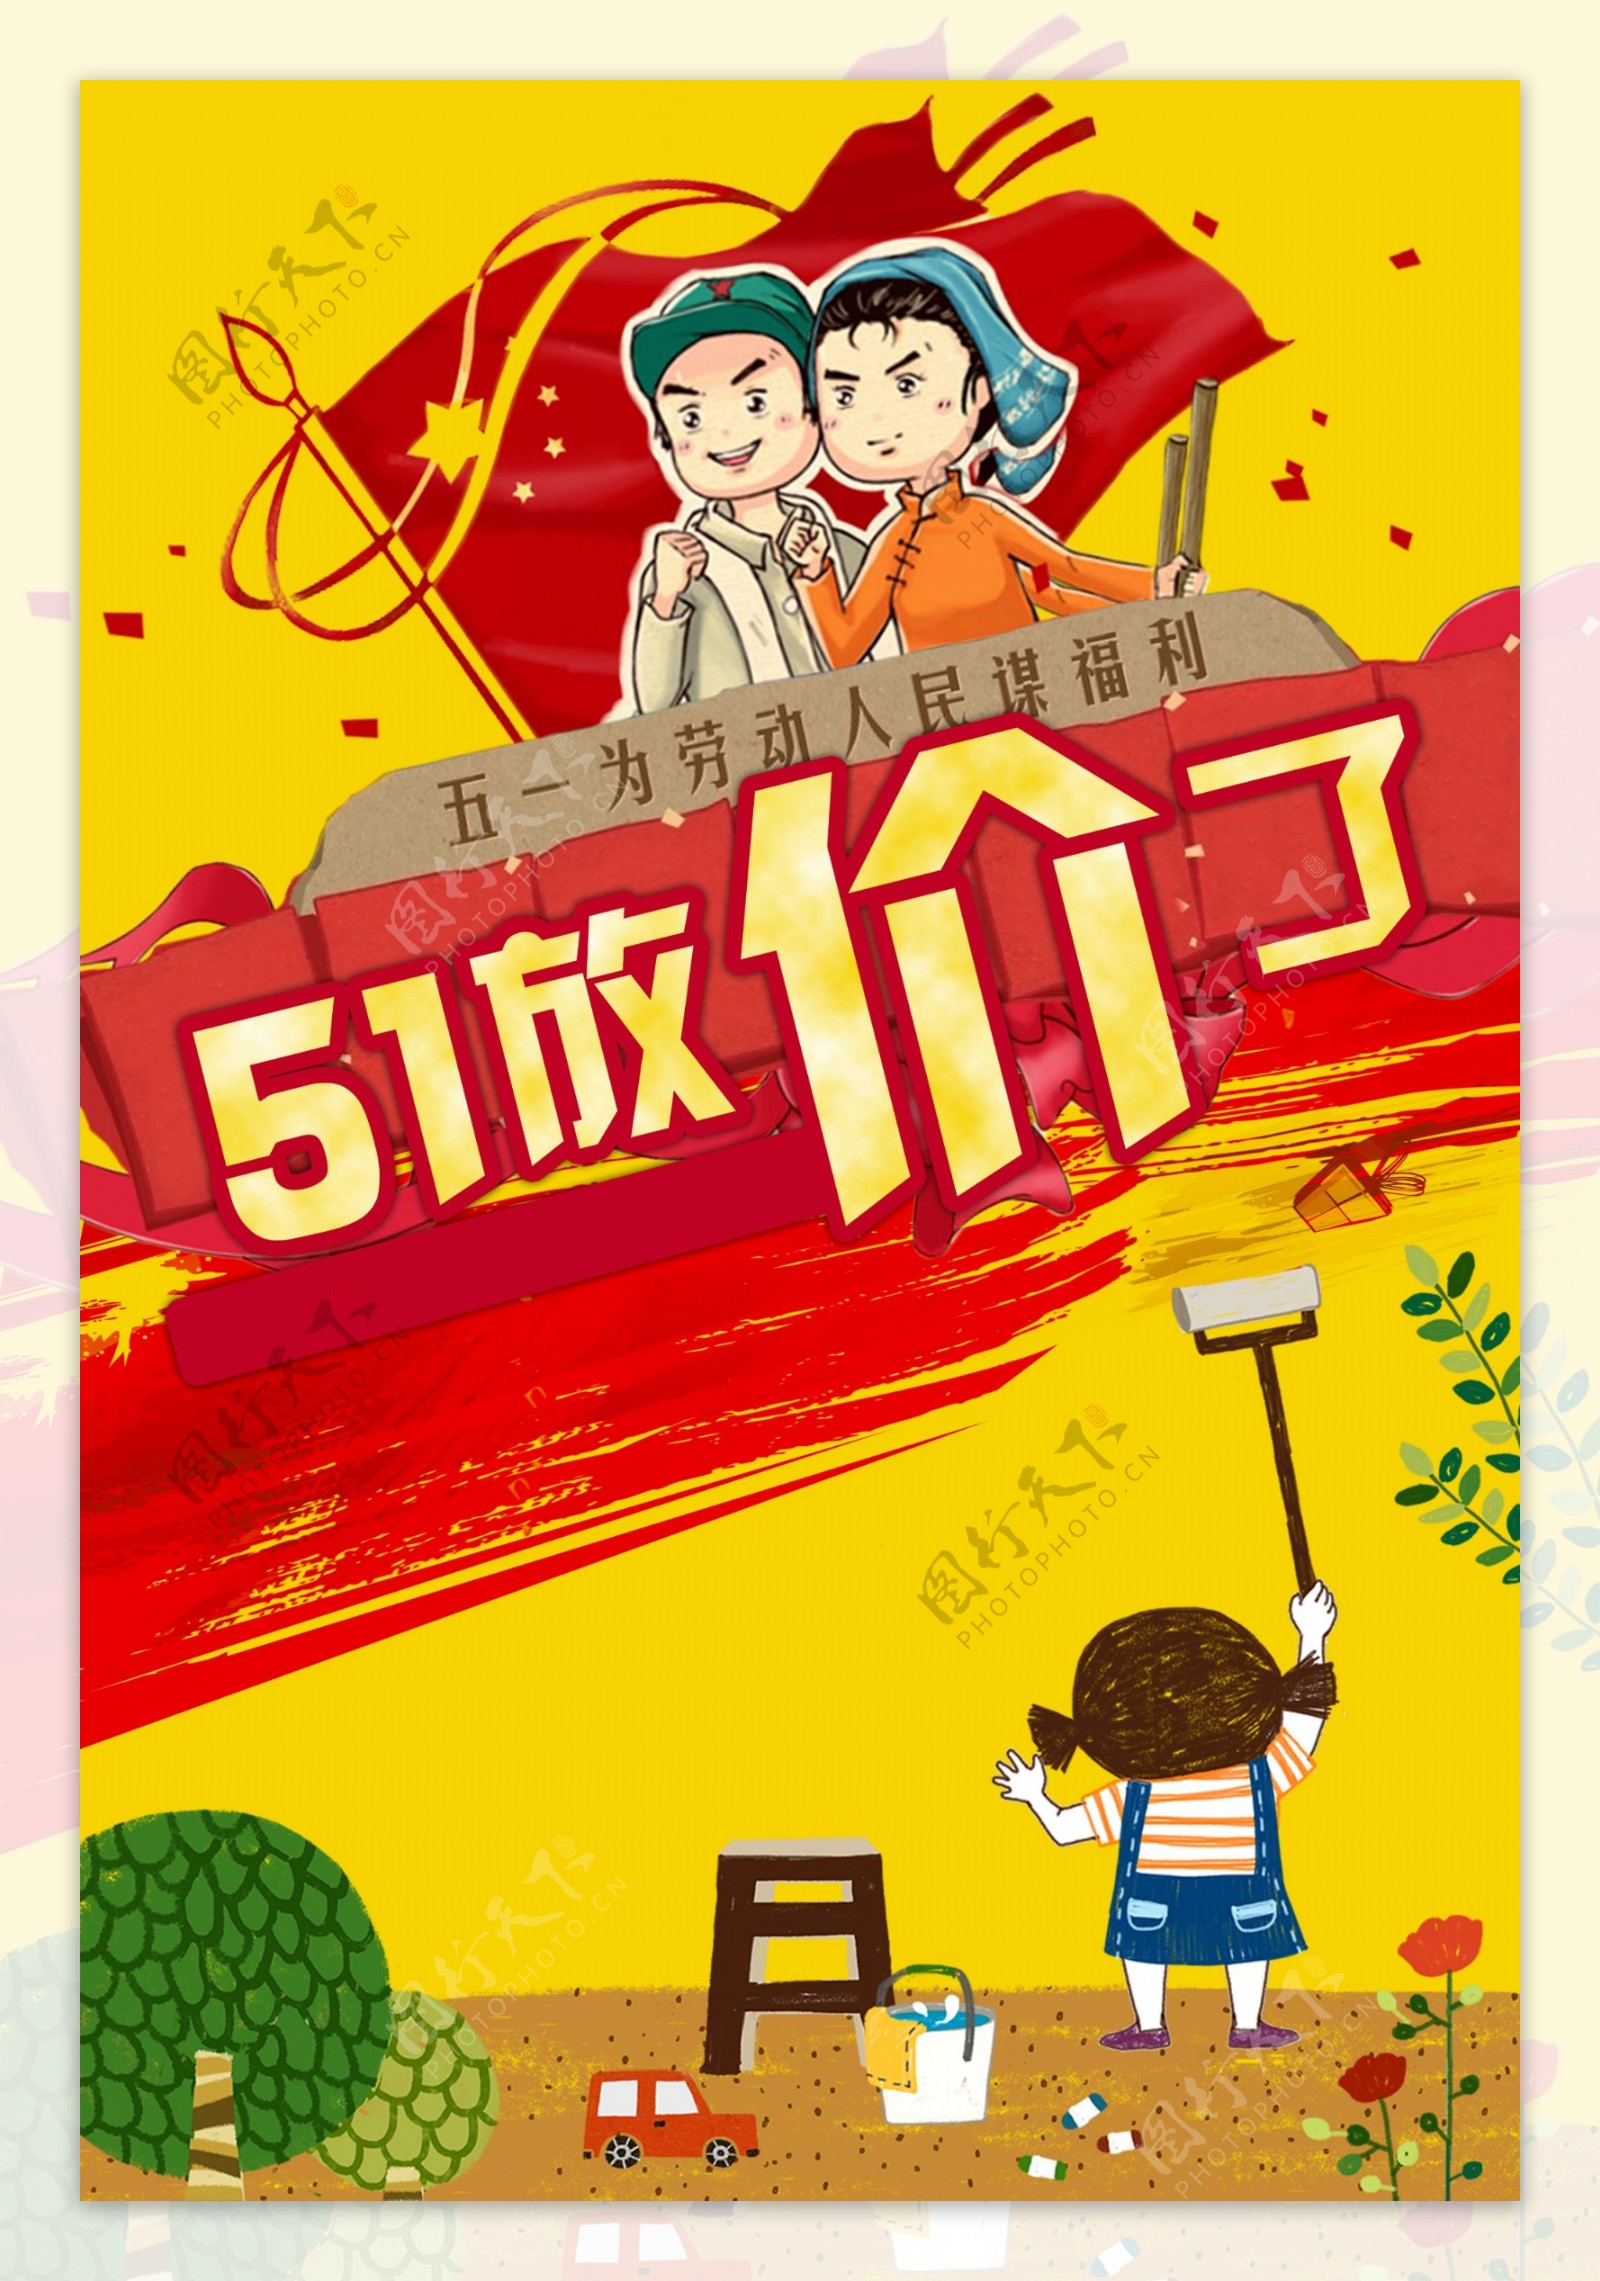 5.1劳动节节日促销海报